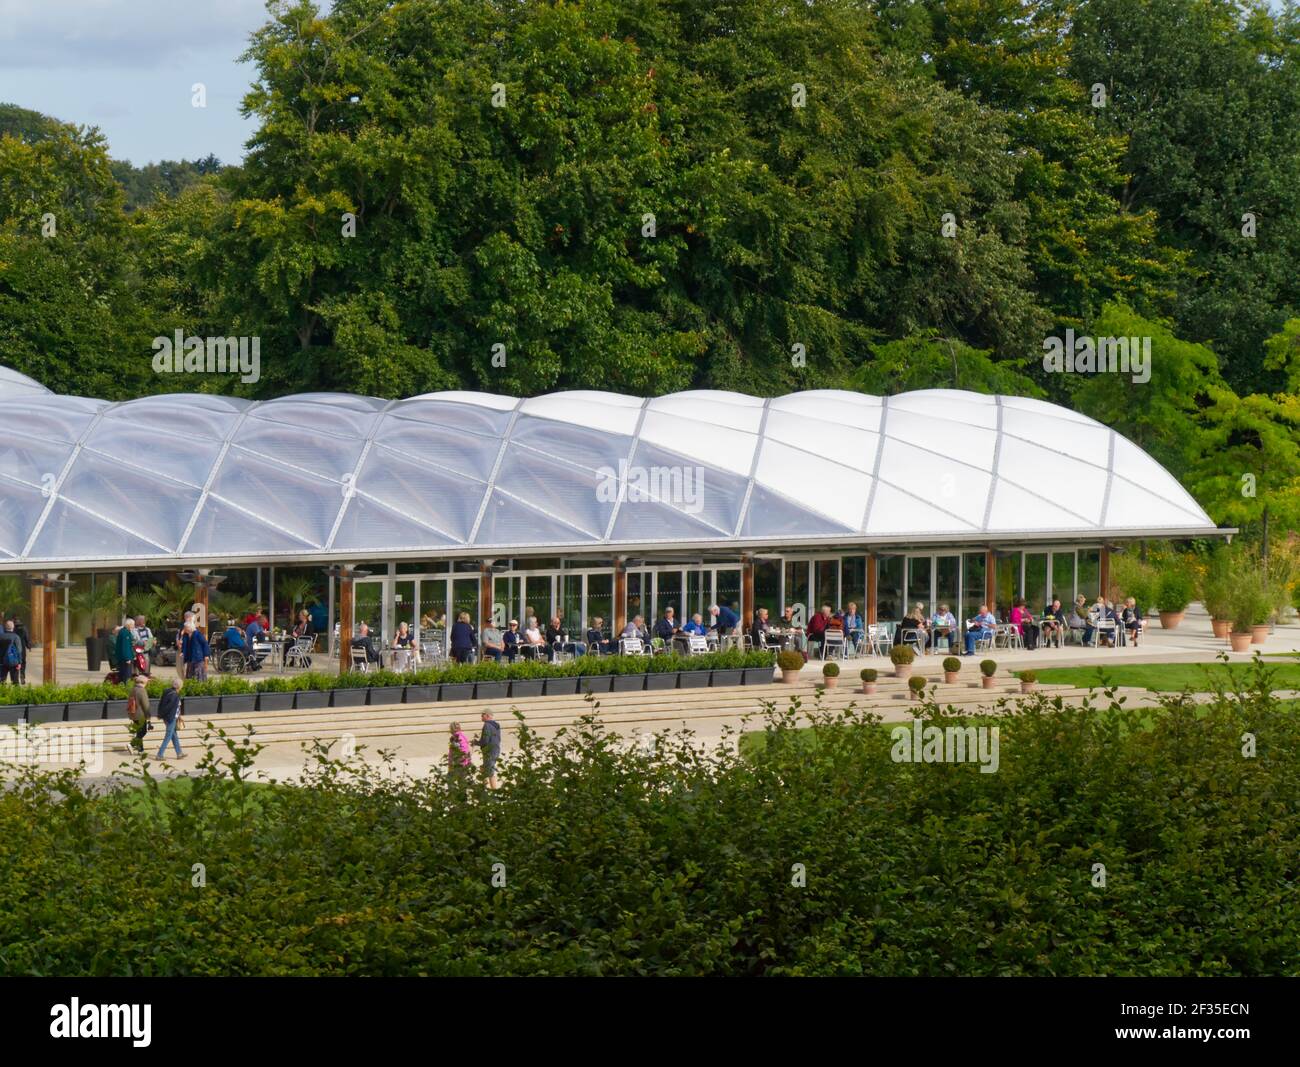 Le toit du pavillon est composé d'oreillers en aluminium ETFE, Alnwick Garden, attraction touristique, Alnwick, Northumberland, Angleterre Banque D'Images